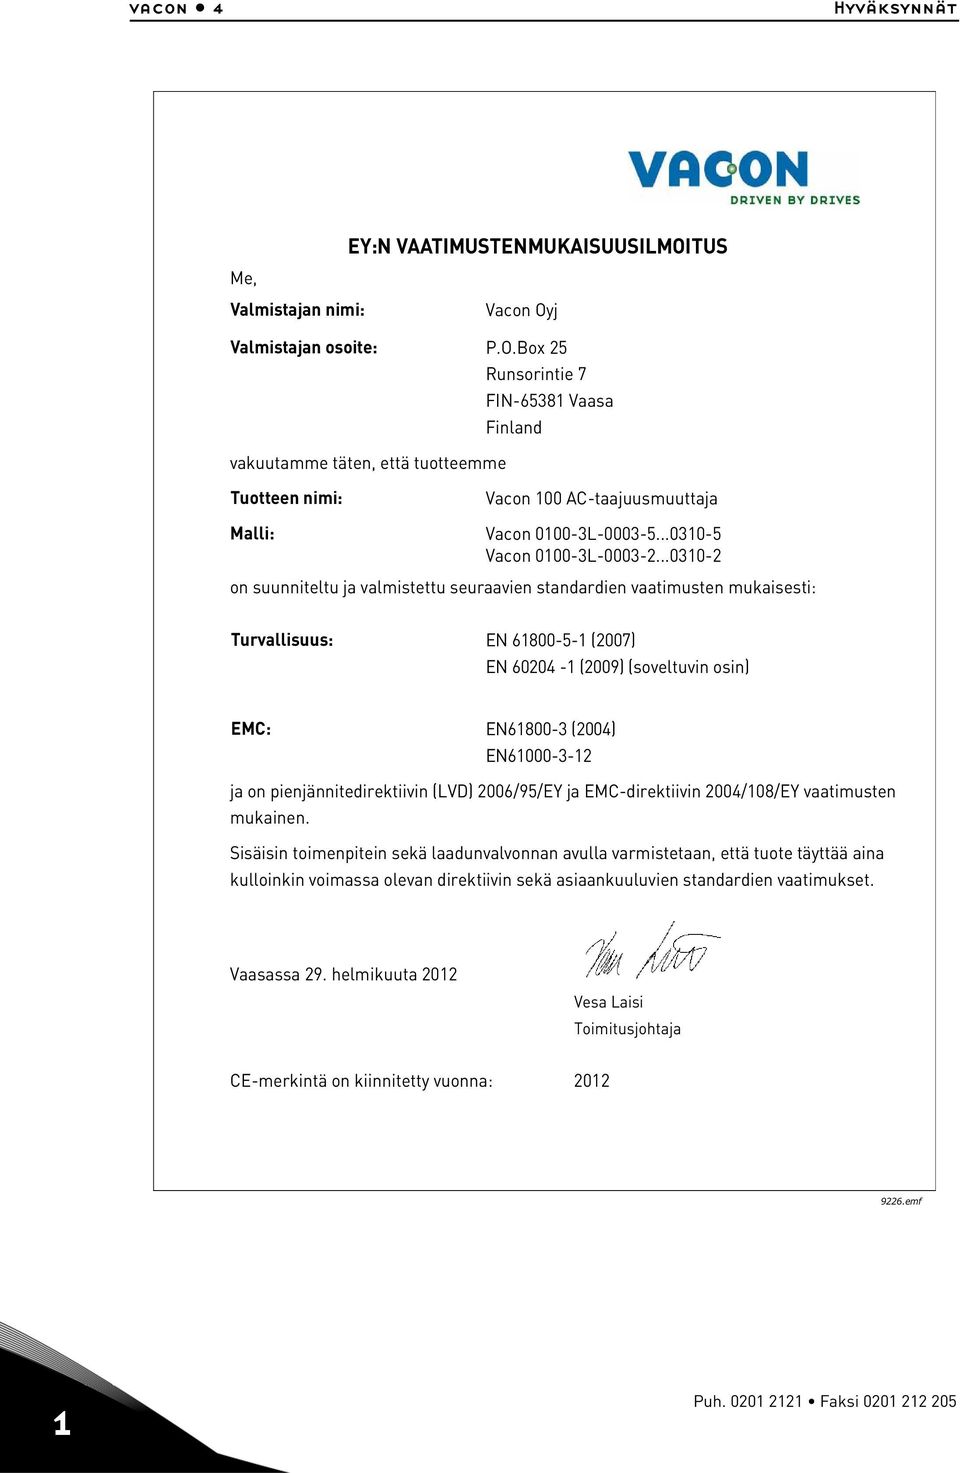 j P.O.Box 25 Runsorintie 7 FIN-65381 Vaasa Finland vakuutamme täten, että tuotteemme Tuotteen nimi: Malli: Vacon 100 AC-taajuusmuuttaja Vacon 0100-3L-0003-5...0310-5 Vacon 0100-3L-0003-2.